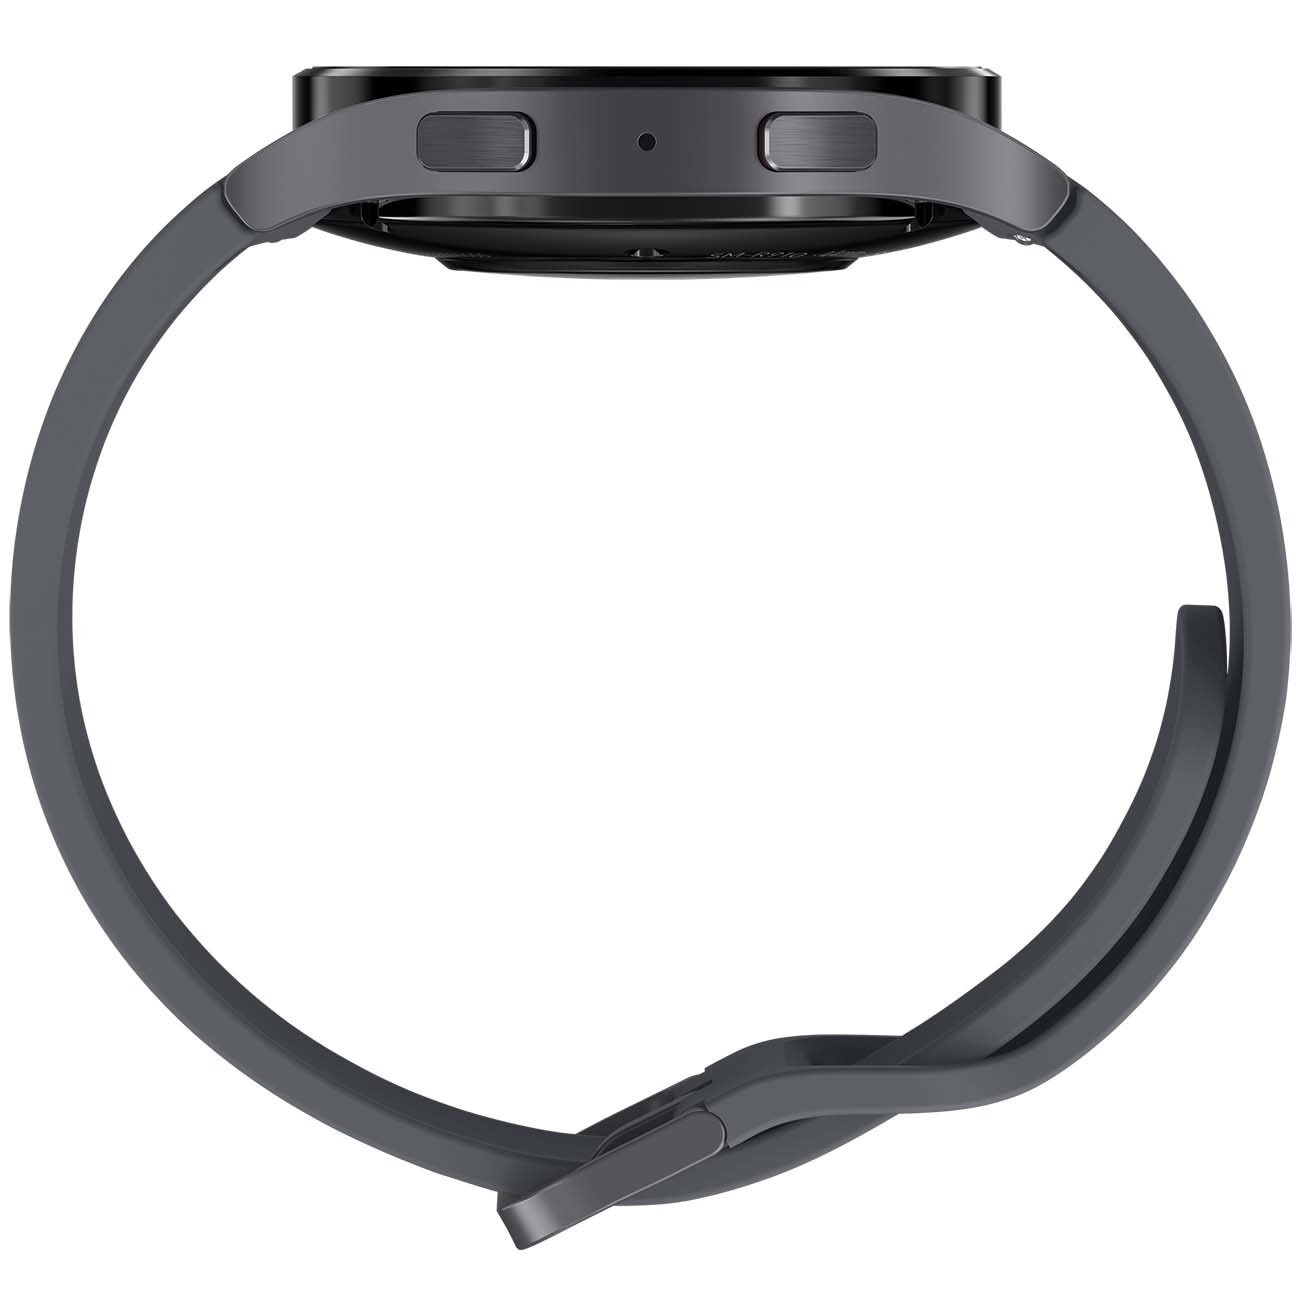 Купить смарт-часы samsung galaxy watch5 40mm graphite Смарт-часы в официальном магазине Apple, Samsung, Xiaomi. iPixel.ru Купить, заказ, кредит, рассрочка, отзывы,  характеристики, цена,  фотографии, в подарок.